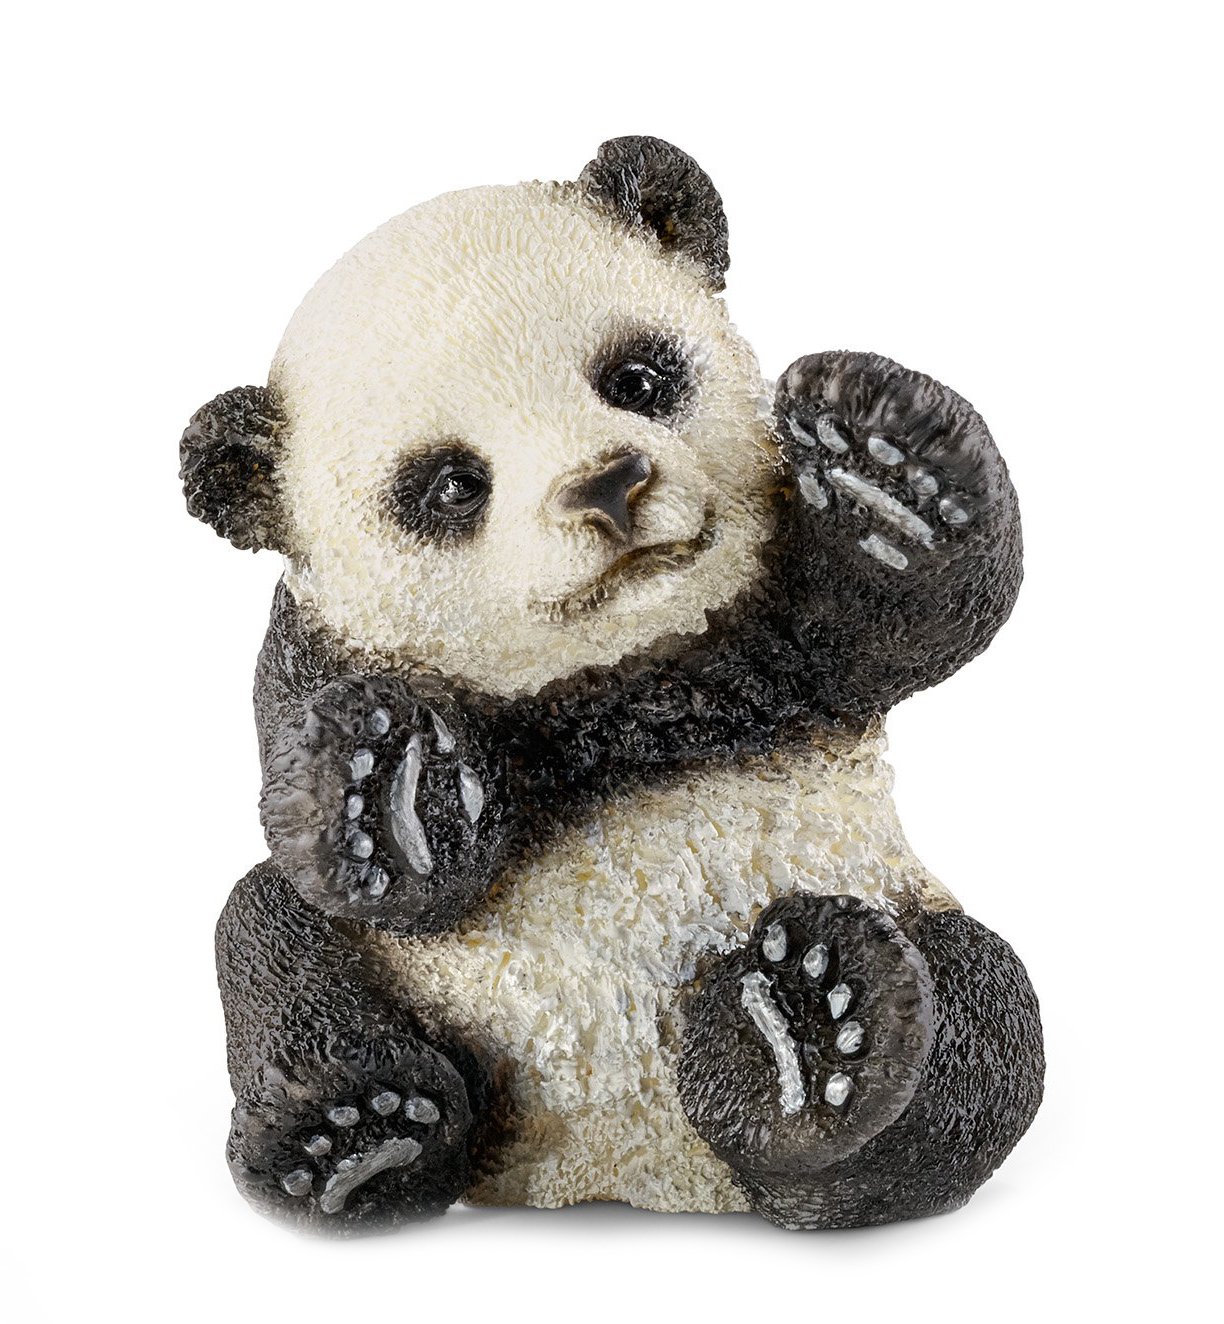 Schleich Playing Panda Cub